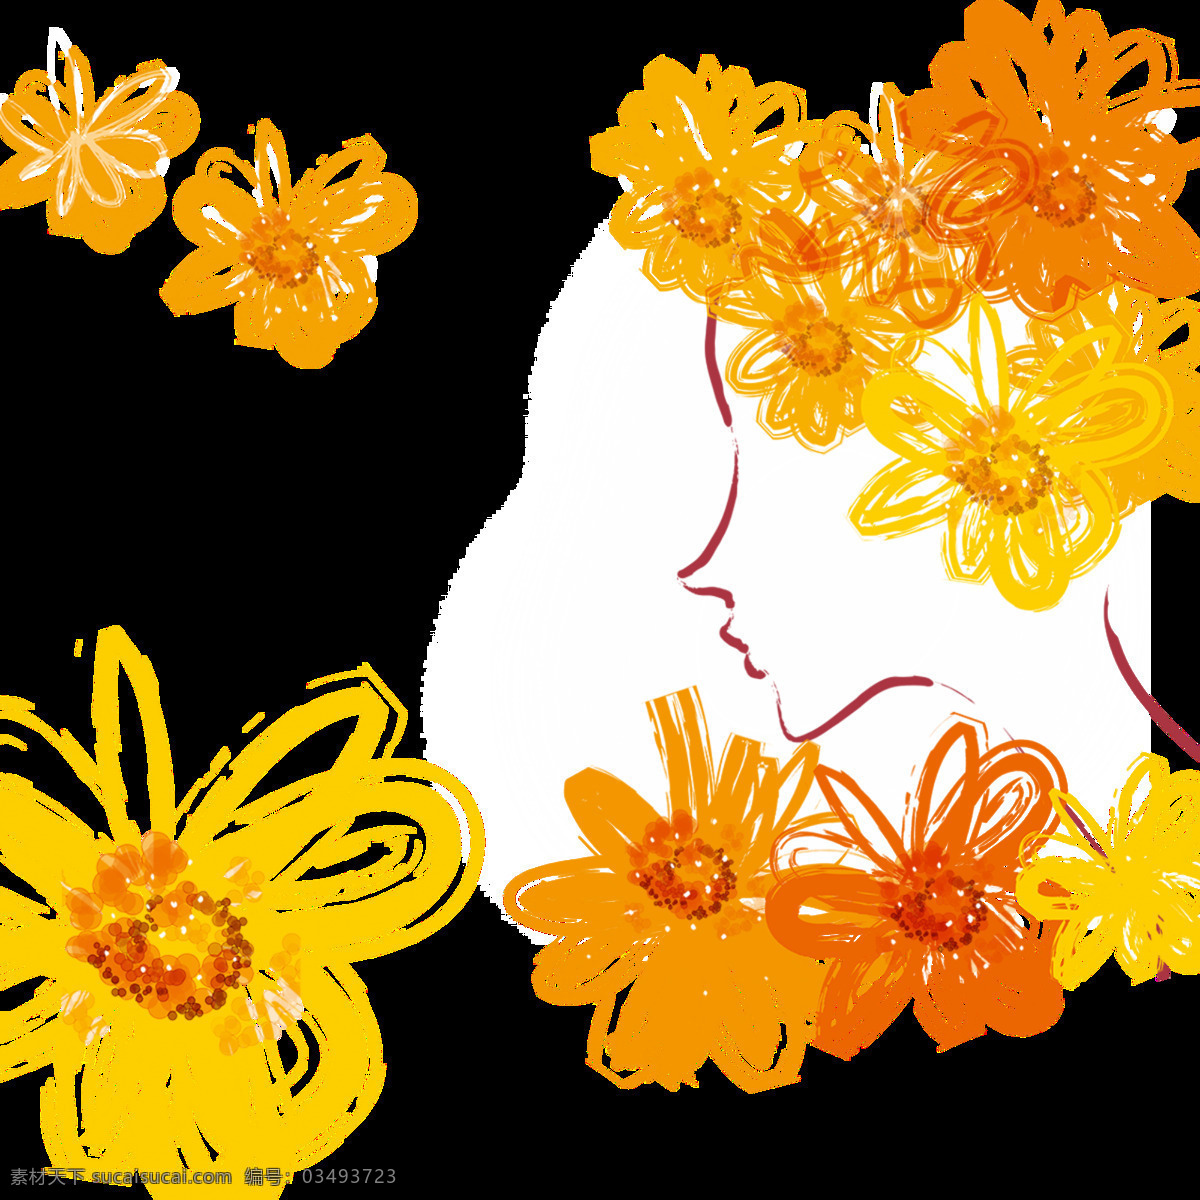 明媚 亮眼 橙黄色 手绘 菊花 装饰 元素 花朵 植物